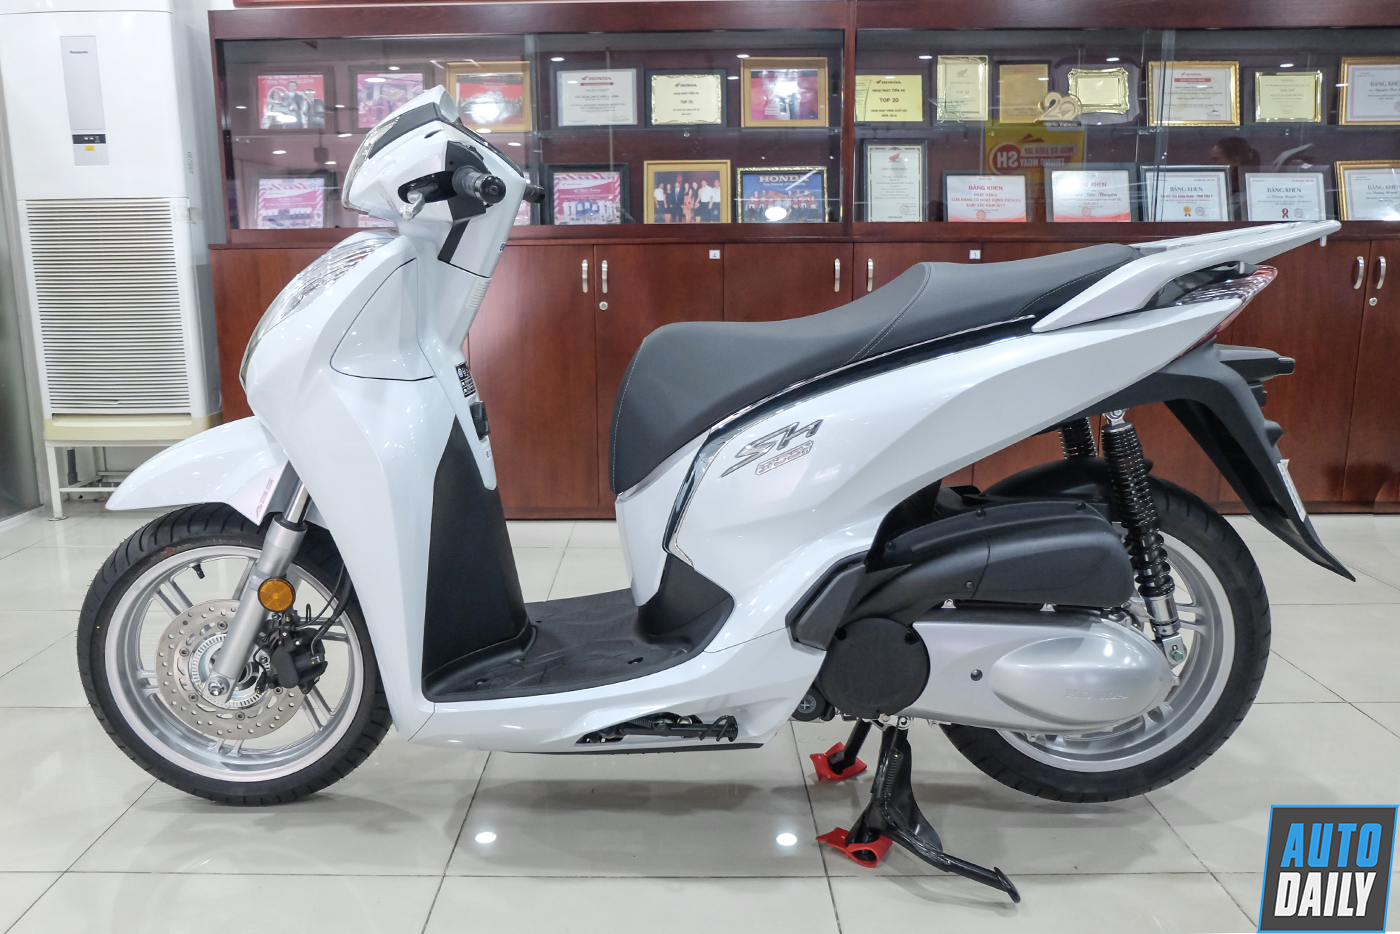 Xe tay ga cao cấp Honda SH300i bị triệu hồi tại Việt Nam  Automotive   Thông tin hình ảnh đánh giá xe ôtô xe máy xe điện  VnEconomy